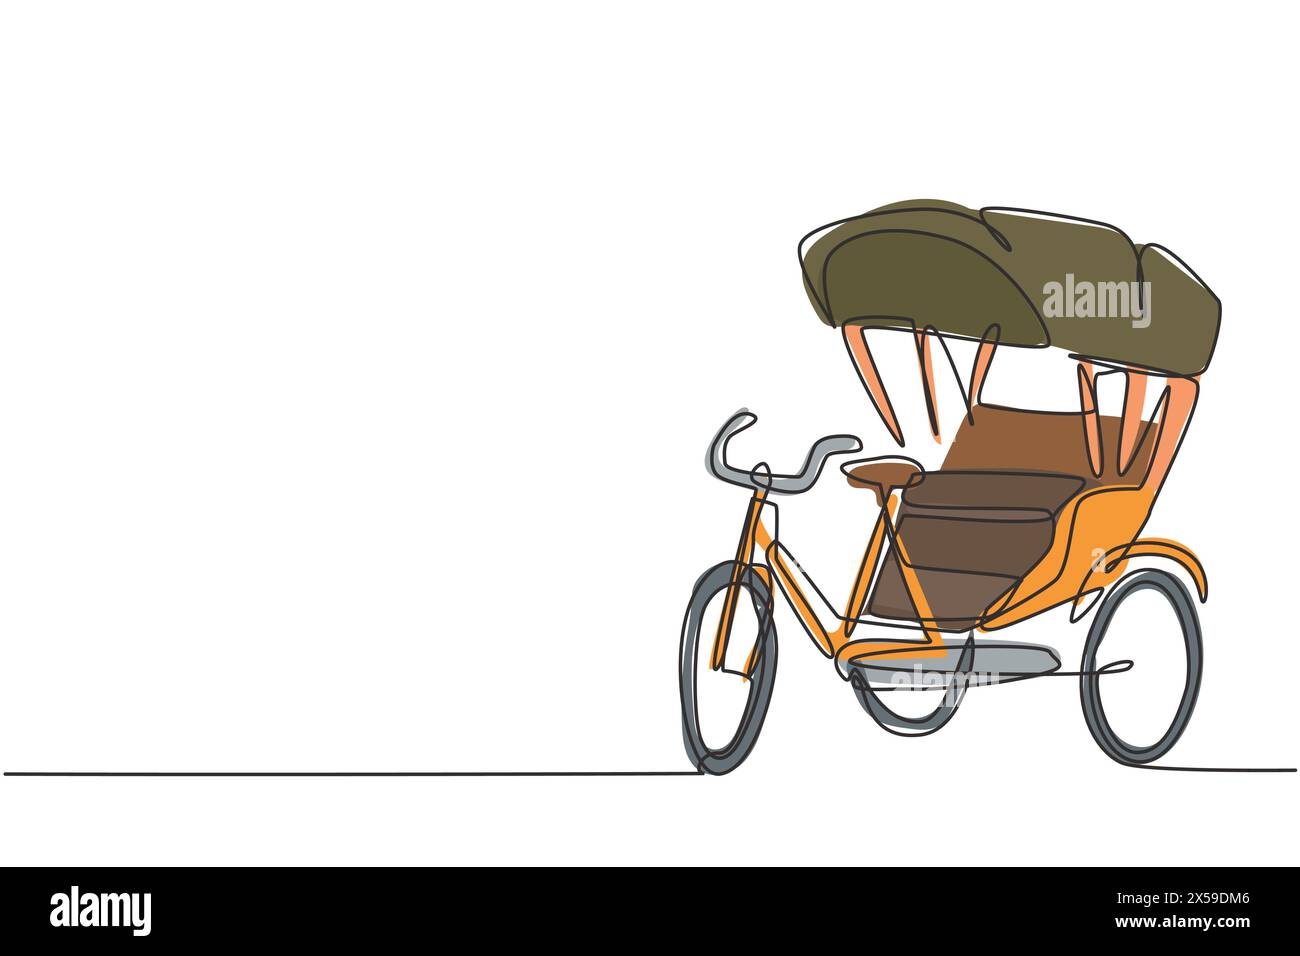 Eine einzeilige Zeichnung einer Fahrrad-Rikscha mit drei Rädern und einem Fond-Beifahrersitz ist ein altes Fahrzeug in mehreren asiatischen Ländern. Modernes Kontinuum Stock Vektor